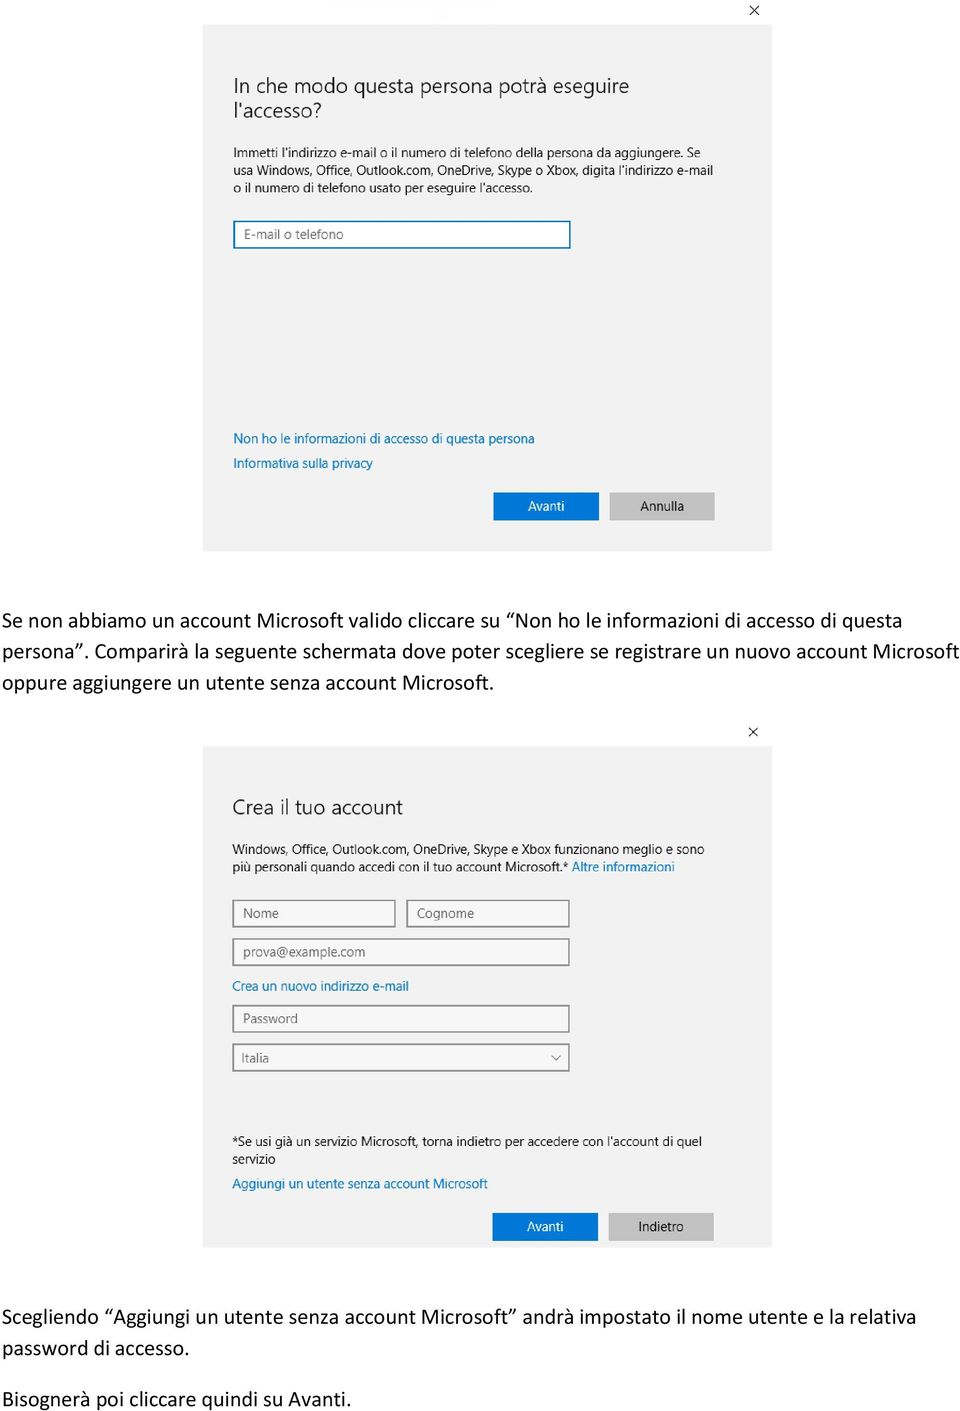 Comparirà la seguente schermata dove poter scegliere se registrare un nuovo account Microsoft oppure